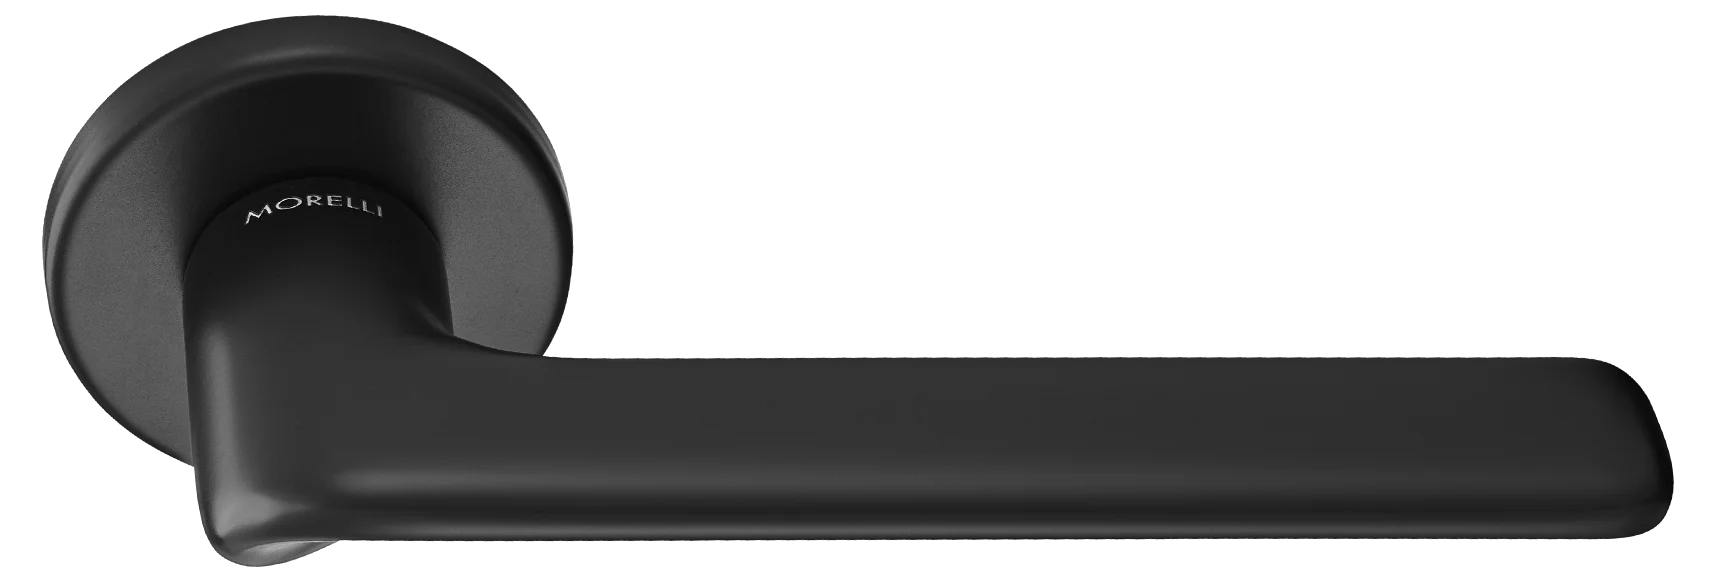 TOMORROW R5 NERO, ручка дверная на розетке 7мм, цвет -  черный фото купить Махачкала